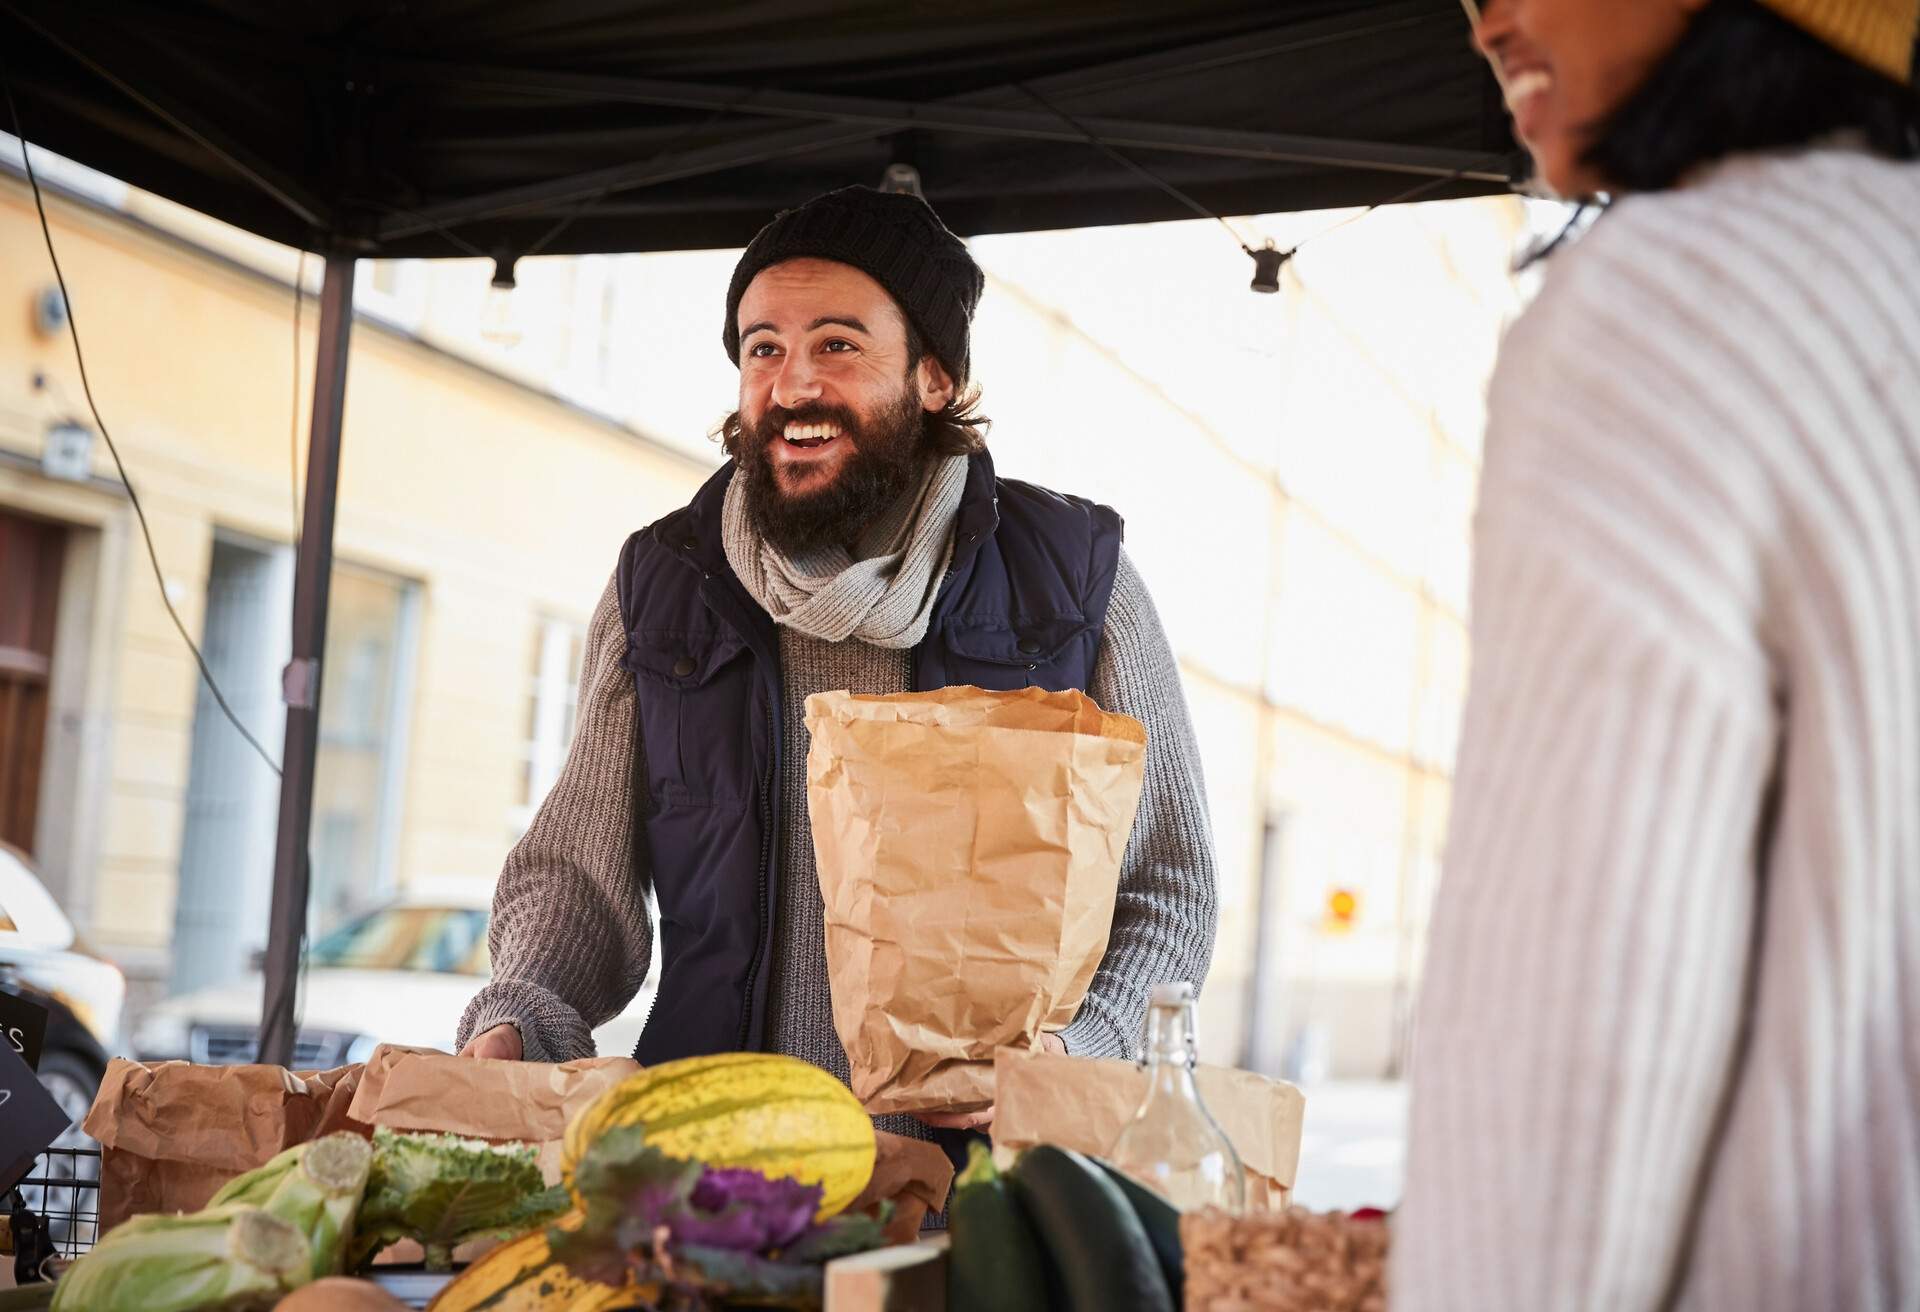 Smiling man buying vegetables from female vendor at market stall, Stockholm, Sweden.